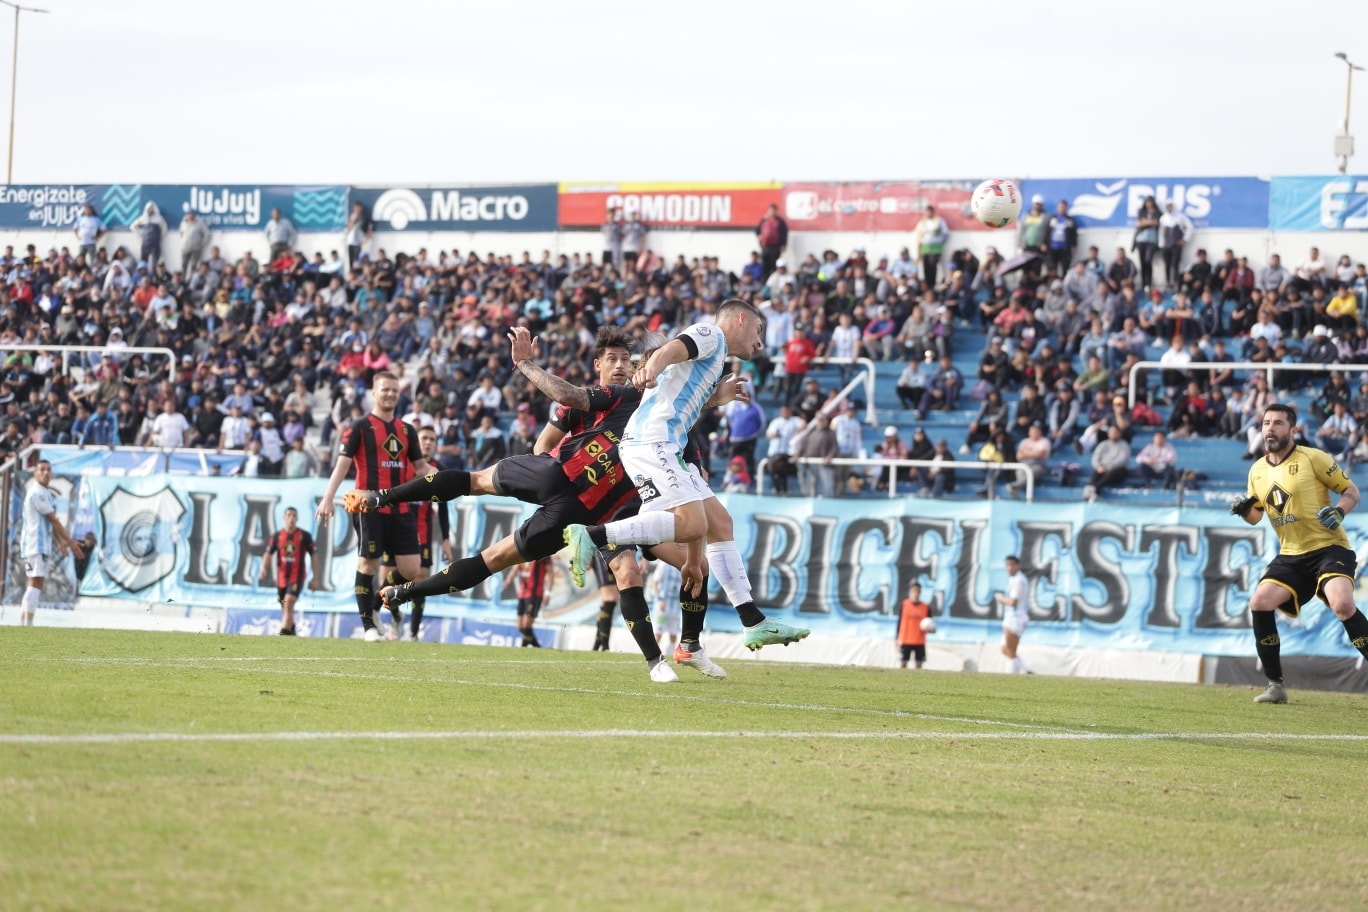 Con una actuación desconocida, el "Lobo" empató sin goles ante Deportivo Madryn – Notinor Jujuy